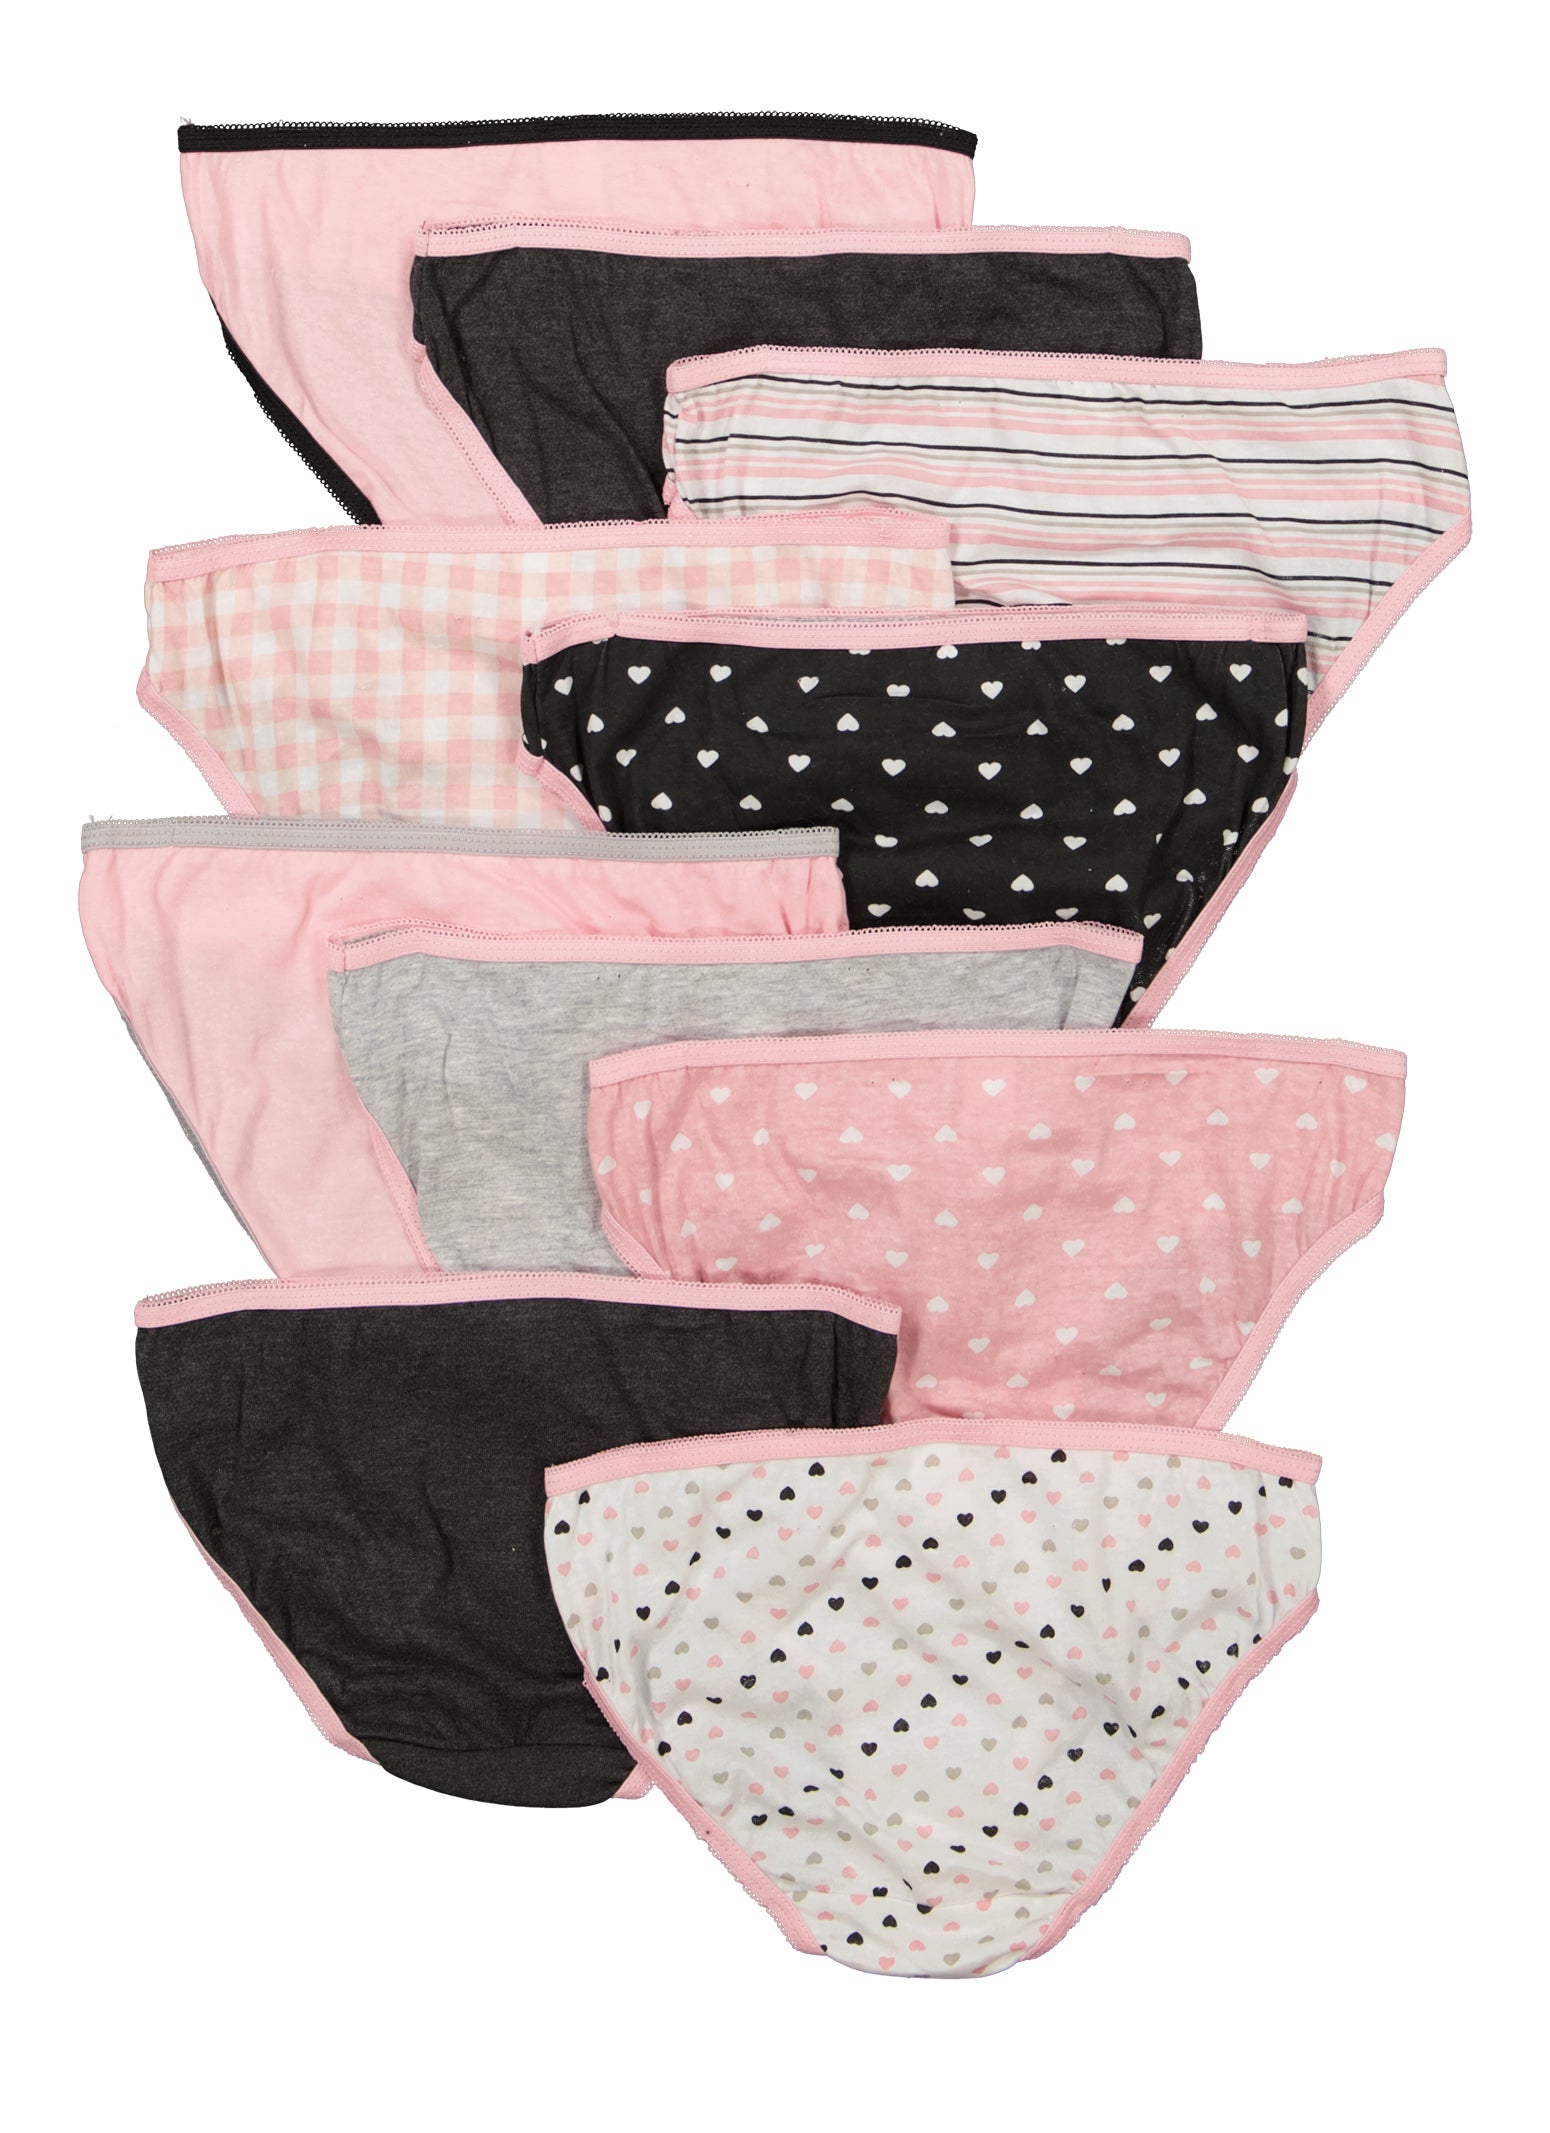 Girls Assorted Heart Print Bikini Panties 10 Pack - Multi Color